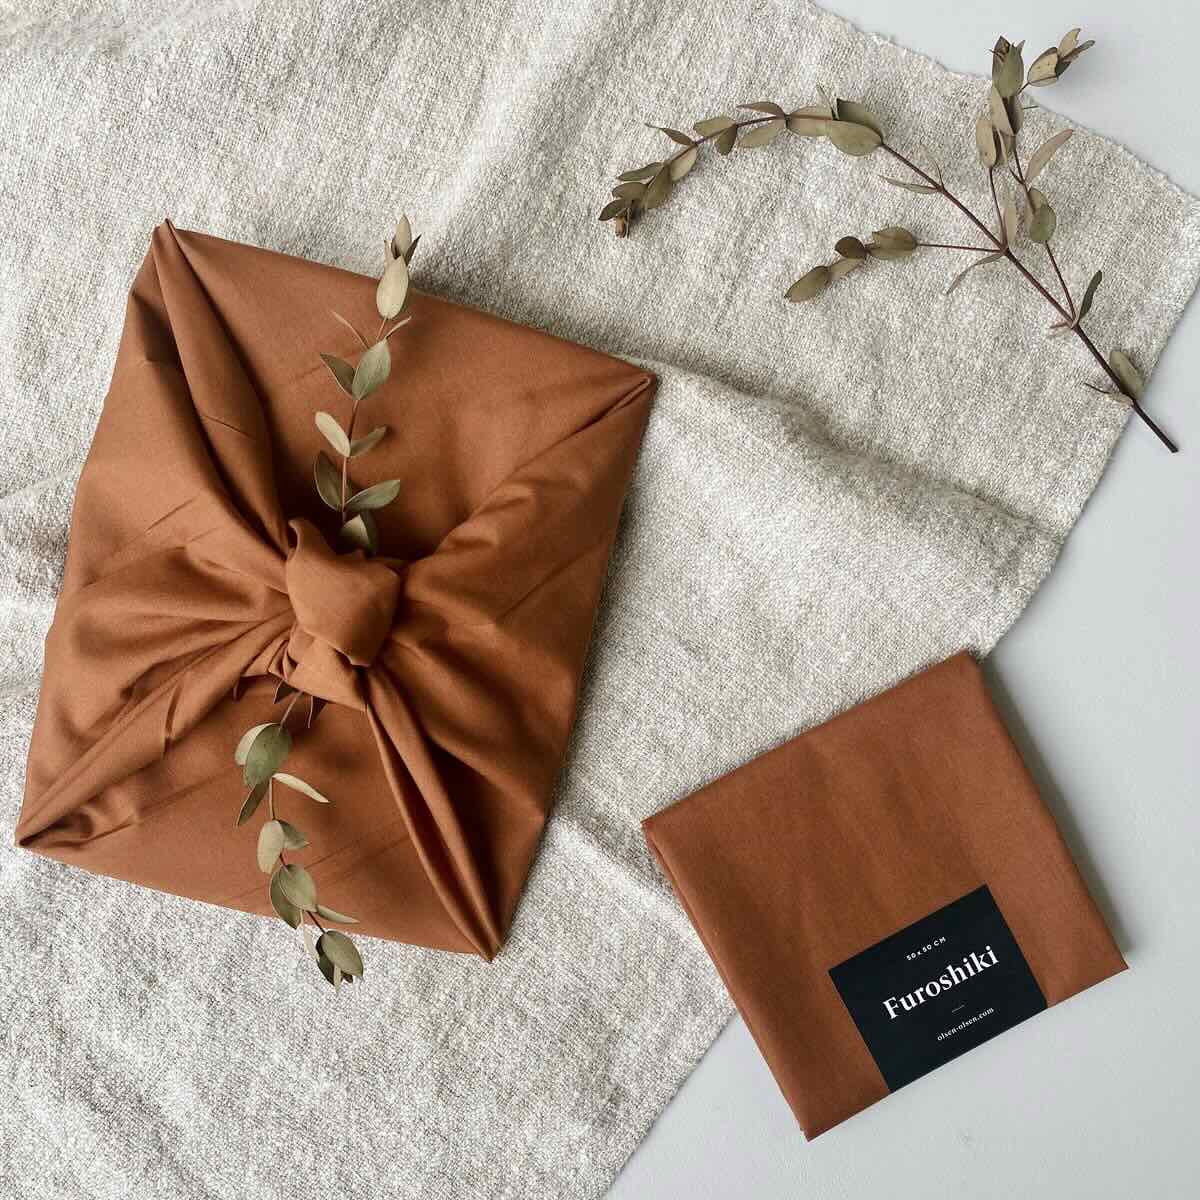 Furoshiki reusable gift wrapping cloths - Small